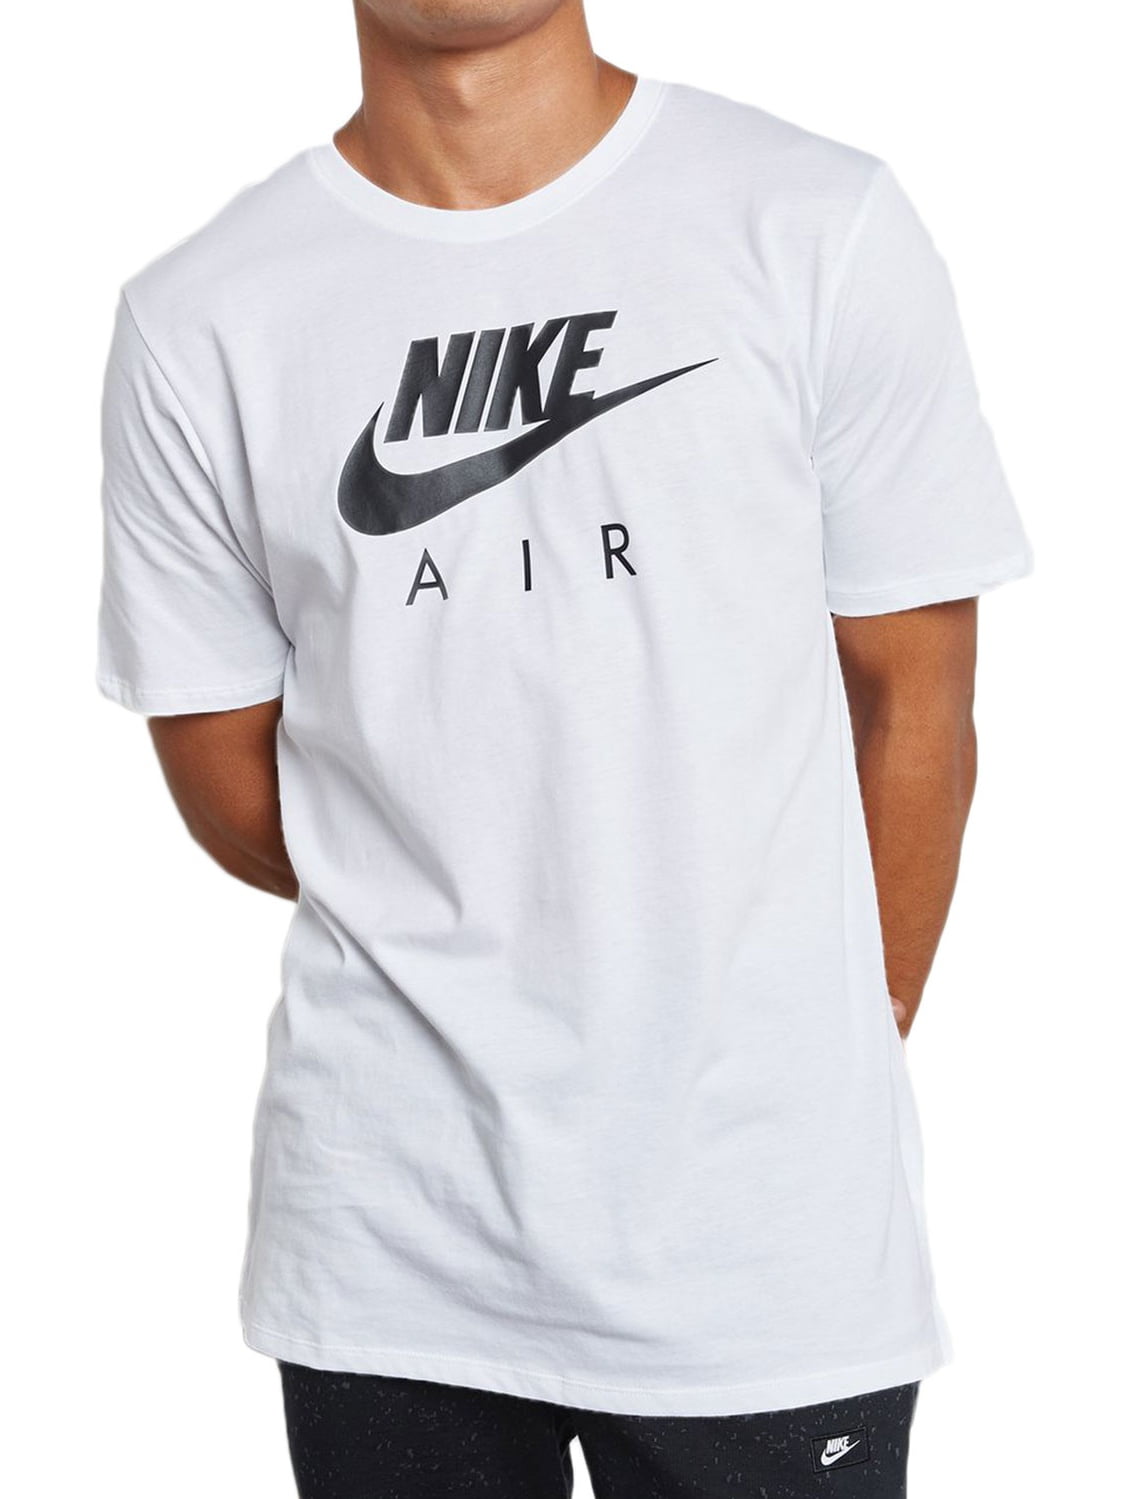 Nike Air Max Sportswear Men's Shortsleeve T-Shirt White/Black 856451 ...